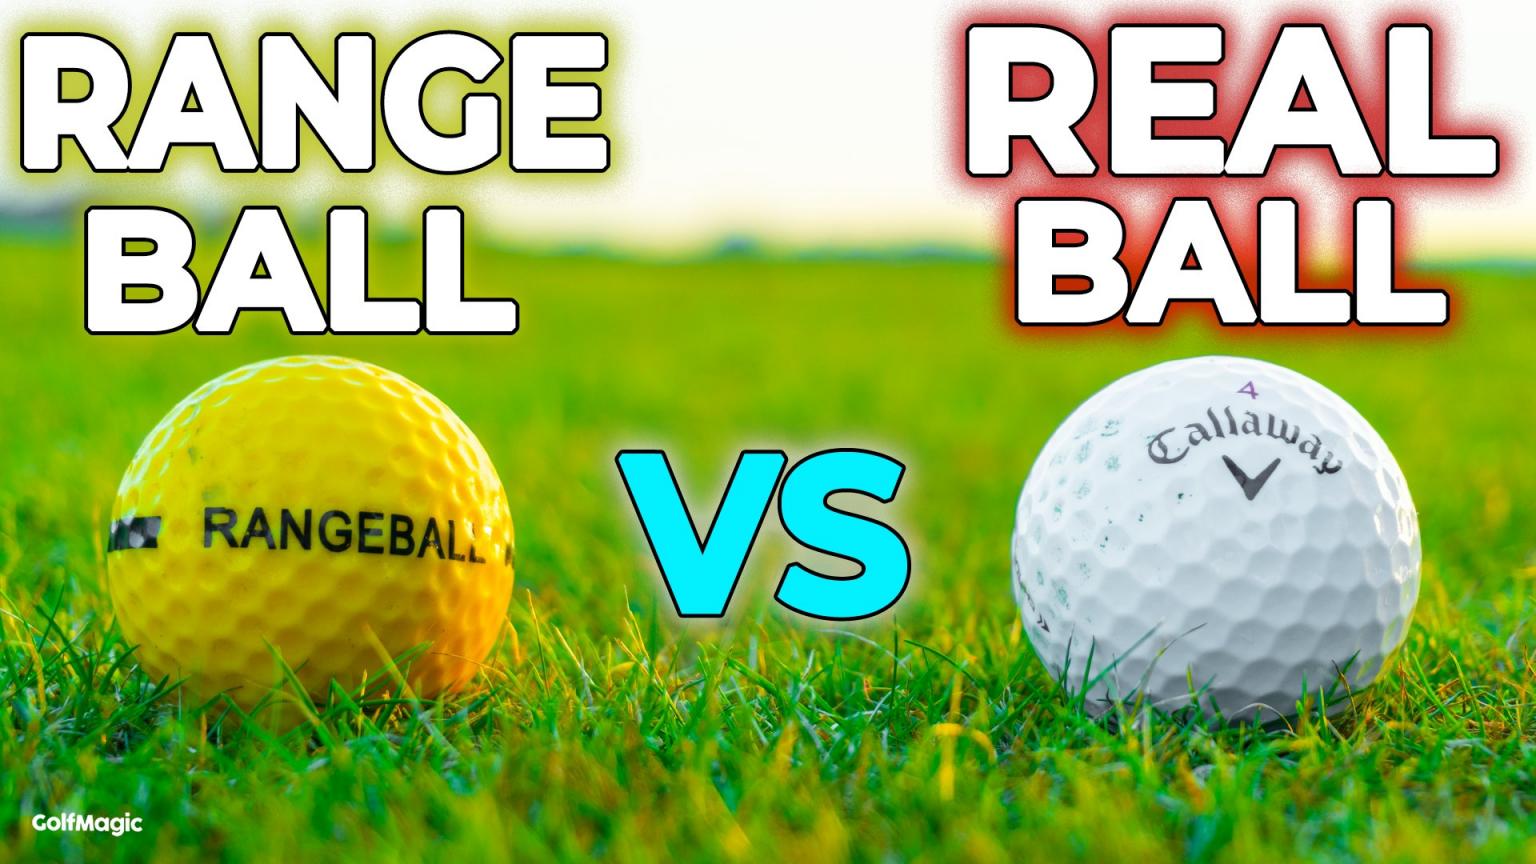 do range balls not travel as far